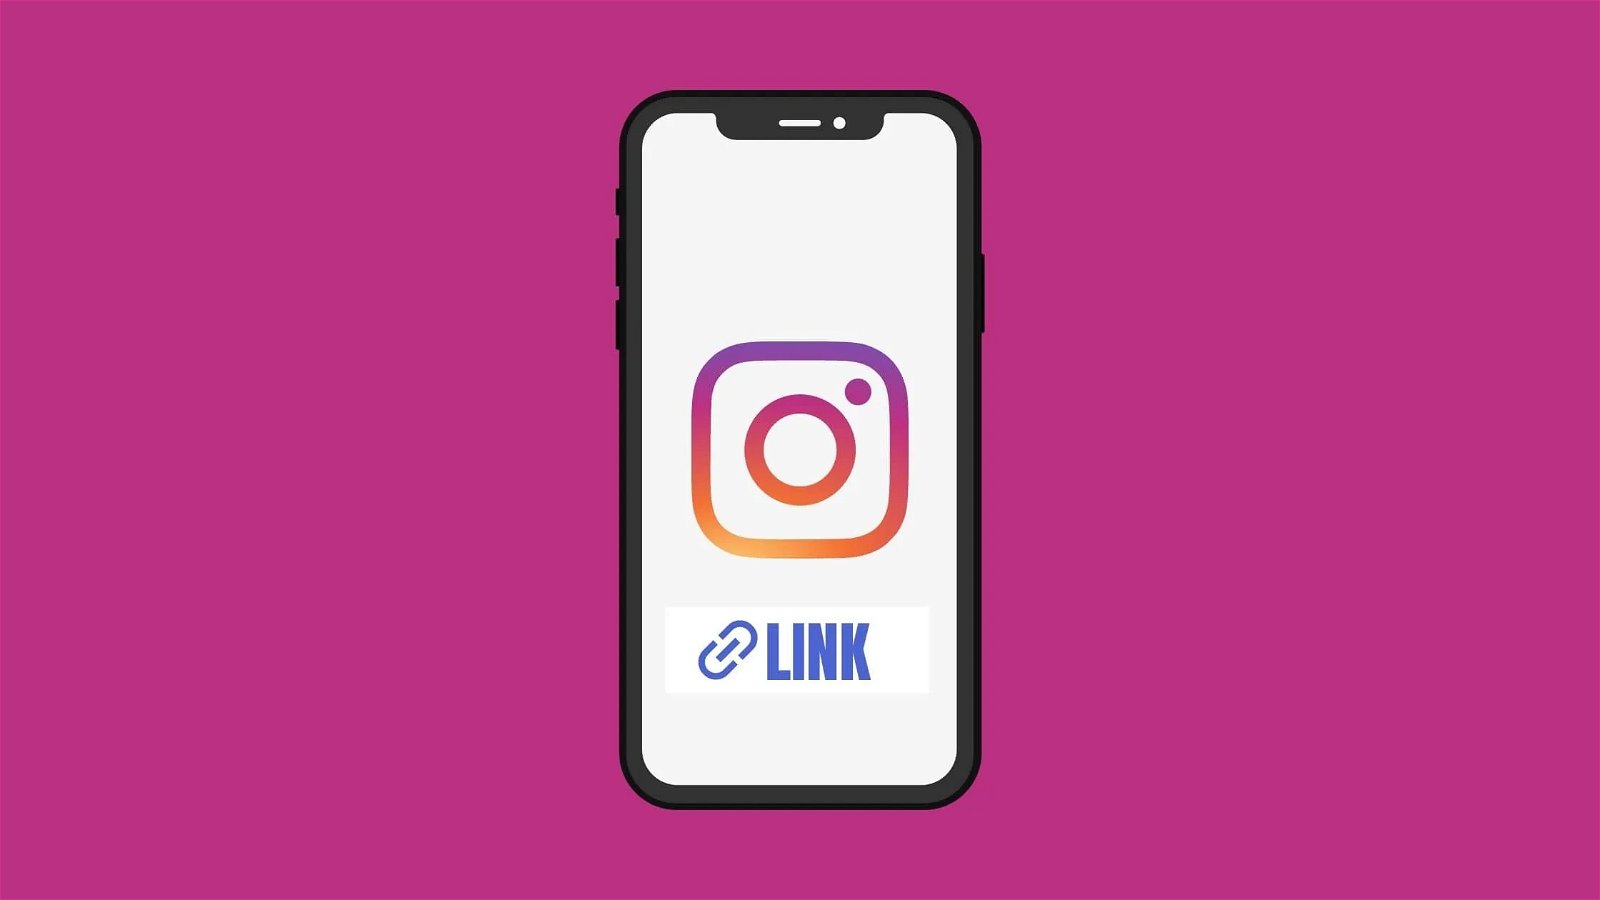 Móvil con el icono de Instagram y un link